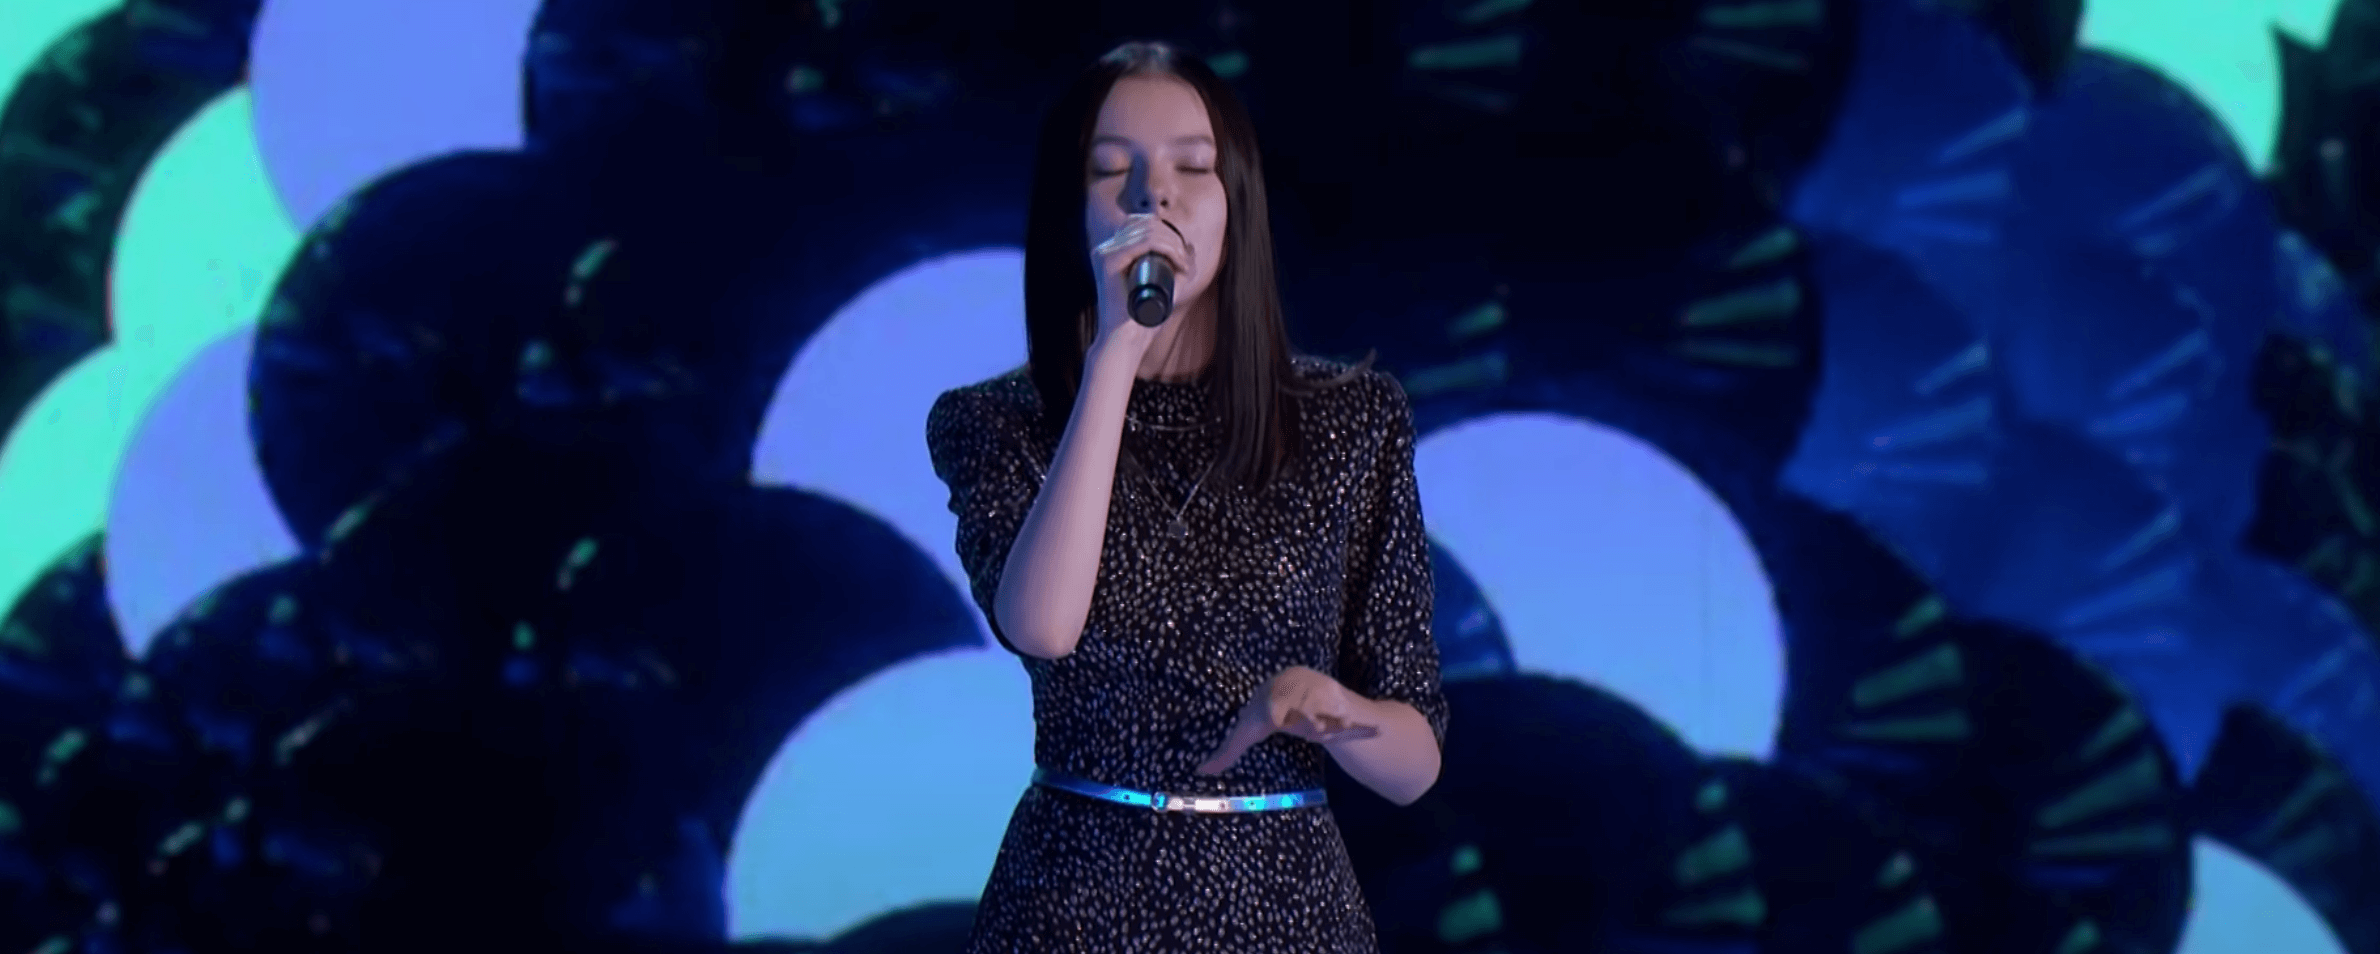 Данэлия Тулешова в финале шоу America’s Got Talent: видео